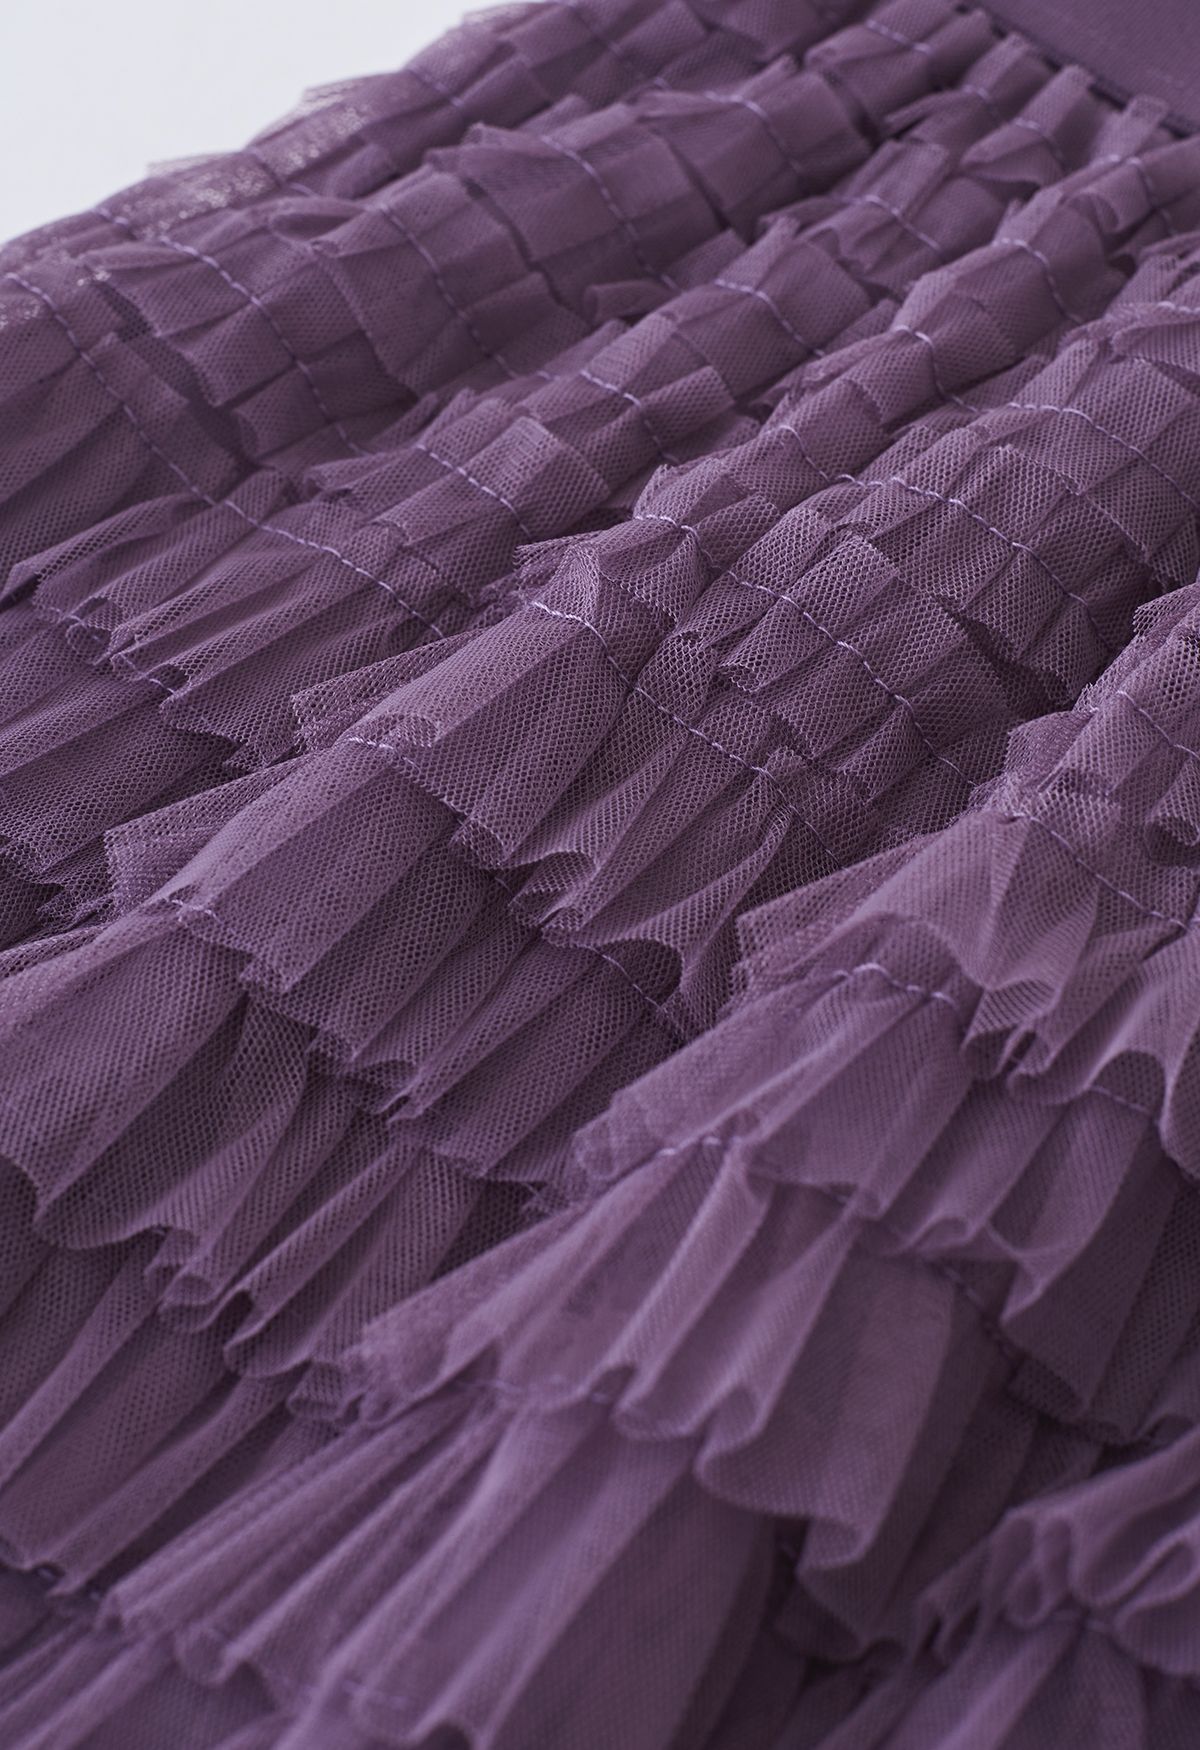 Swan Cloud Midi Skirt in Purple